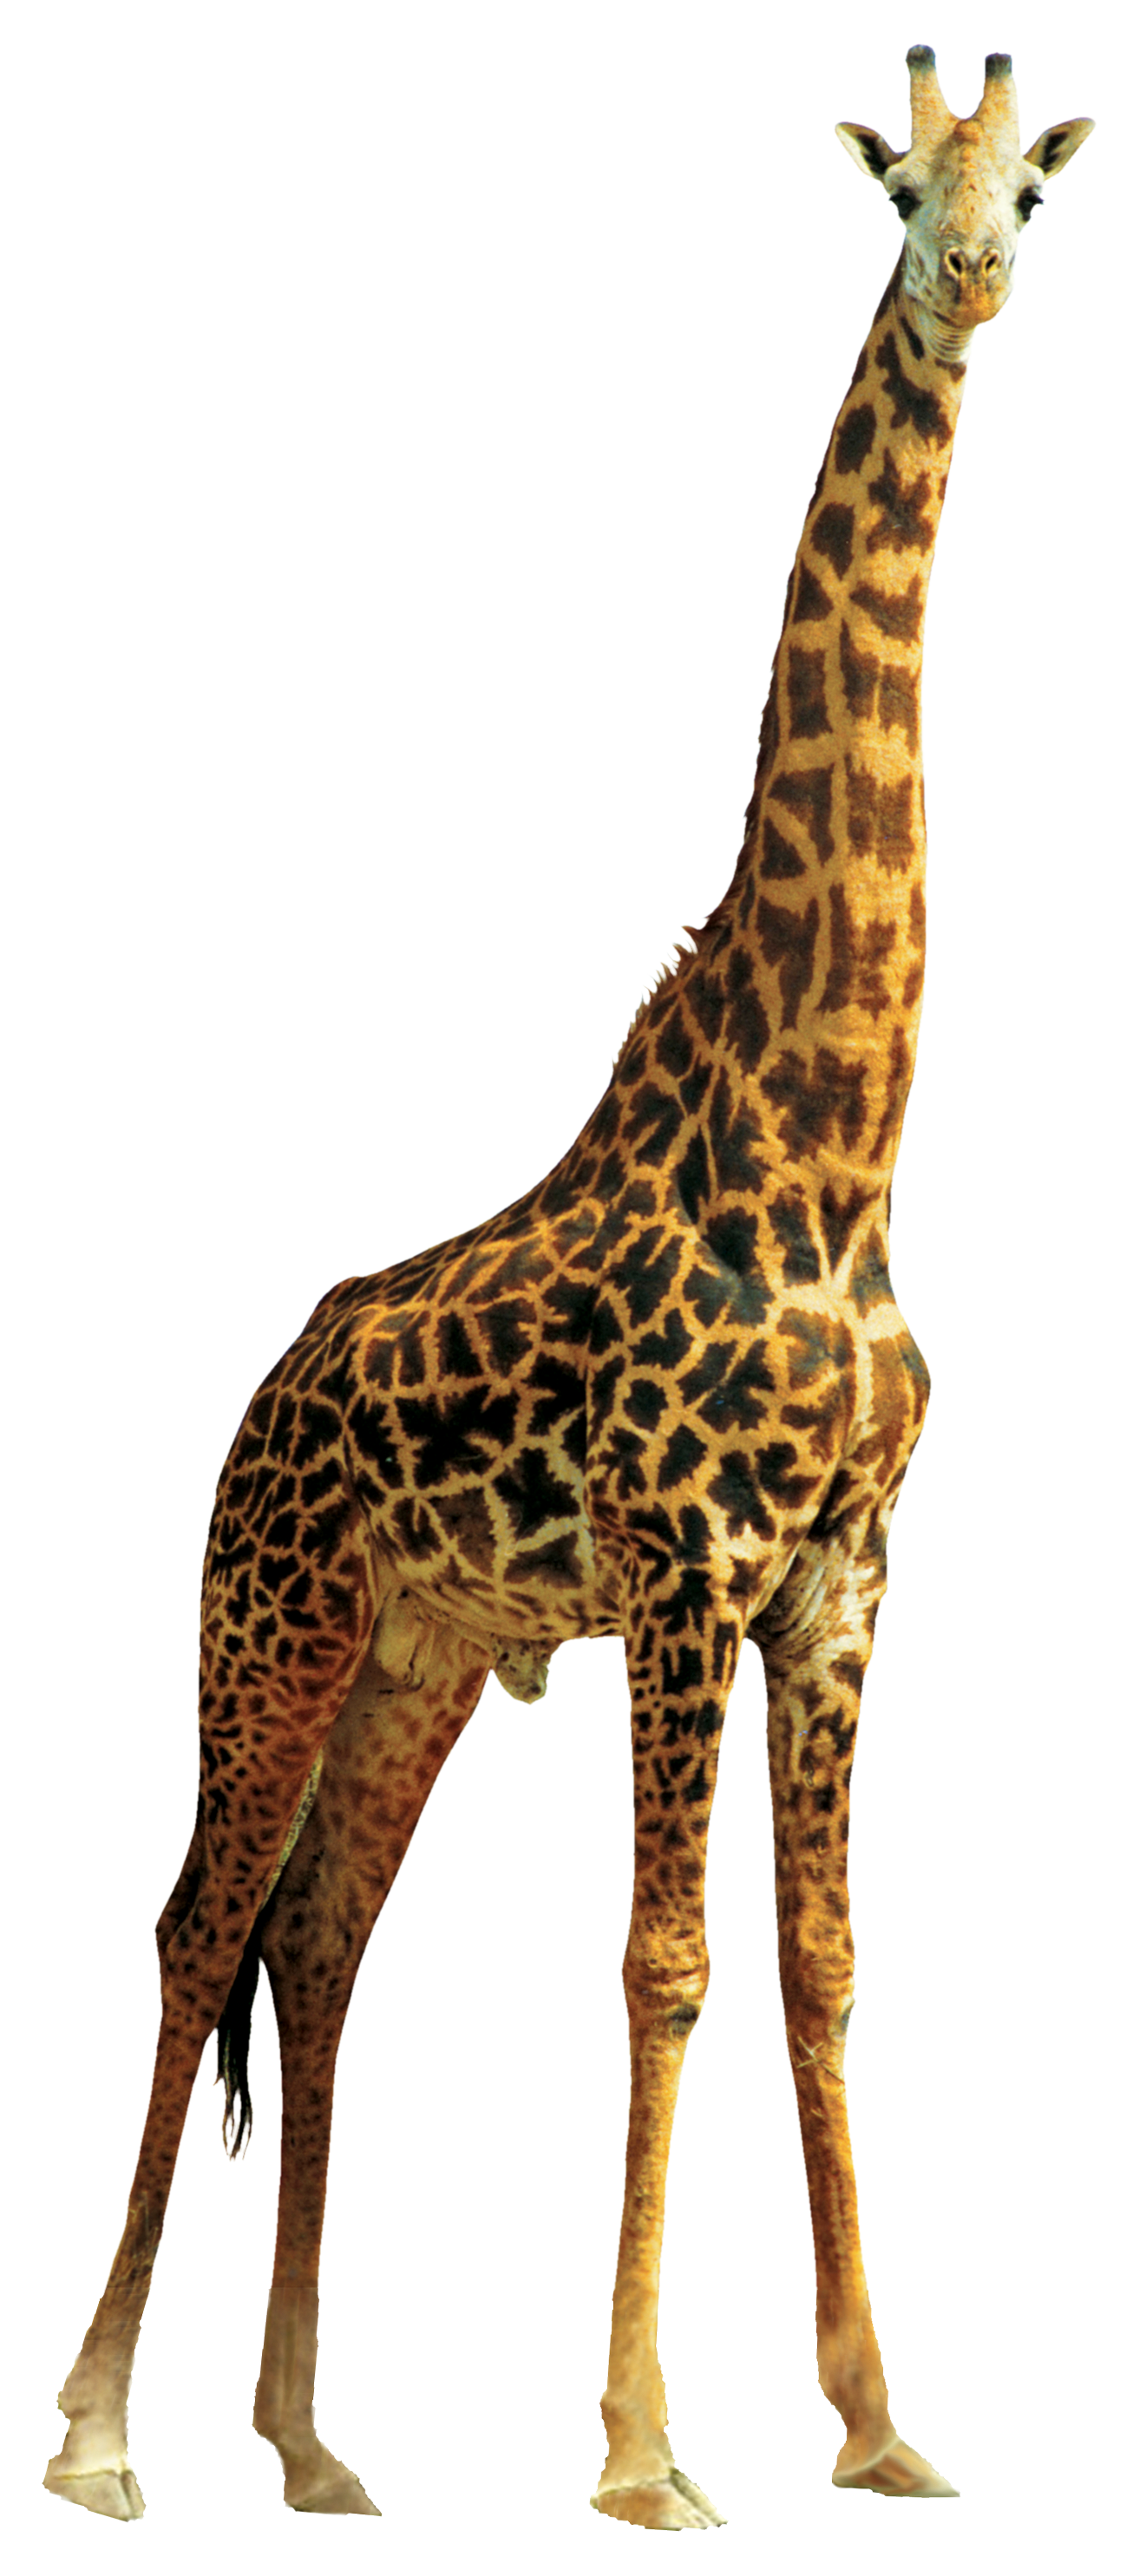 Lion Giraffe Free Download Image PNG Image